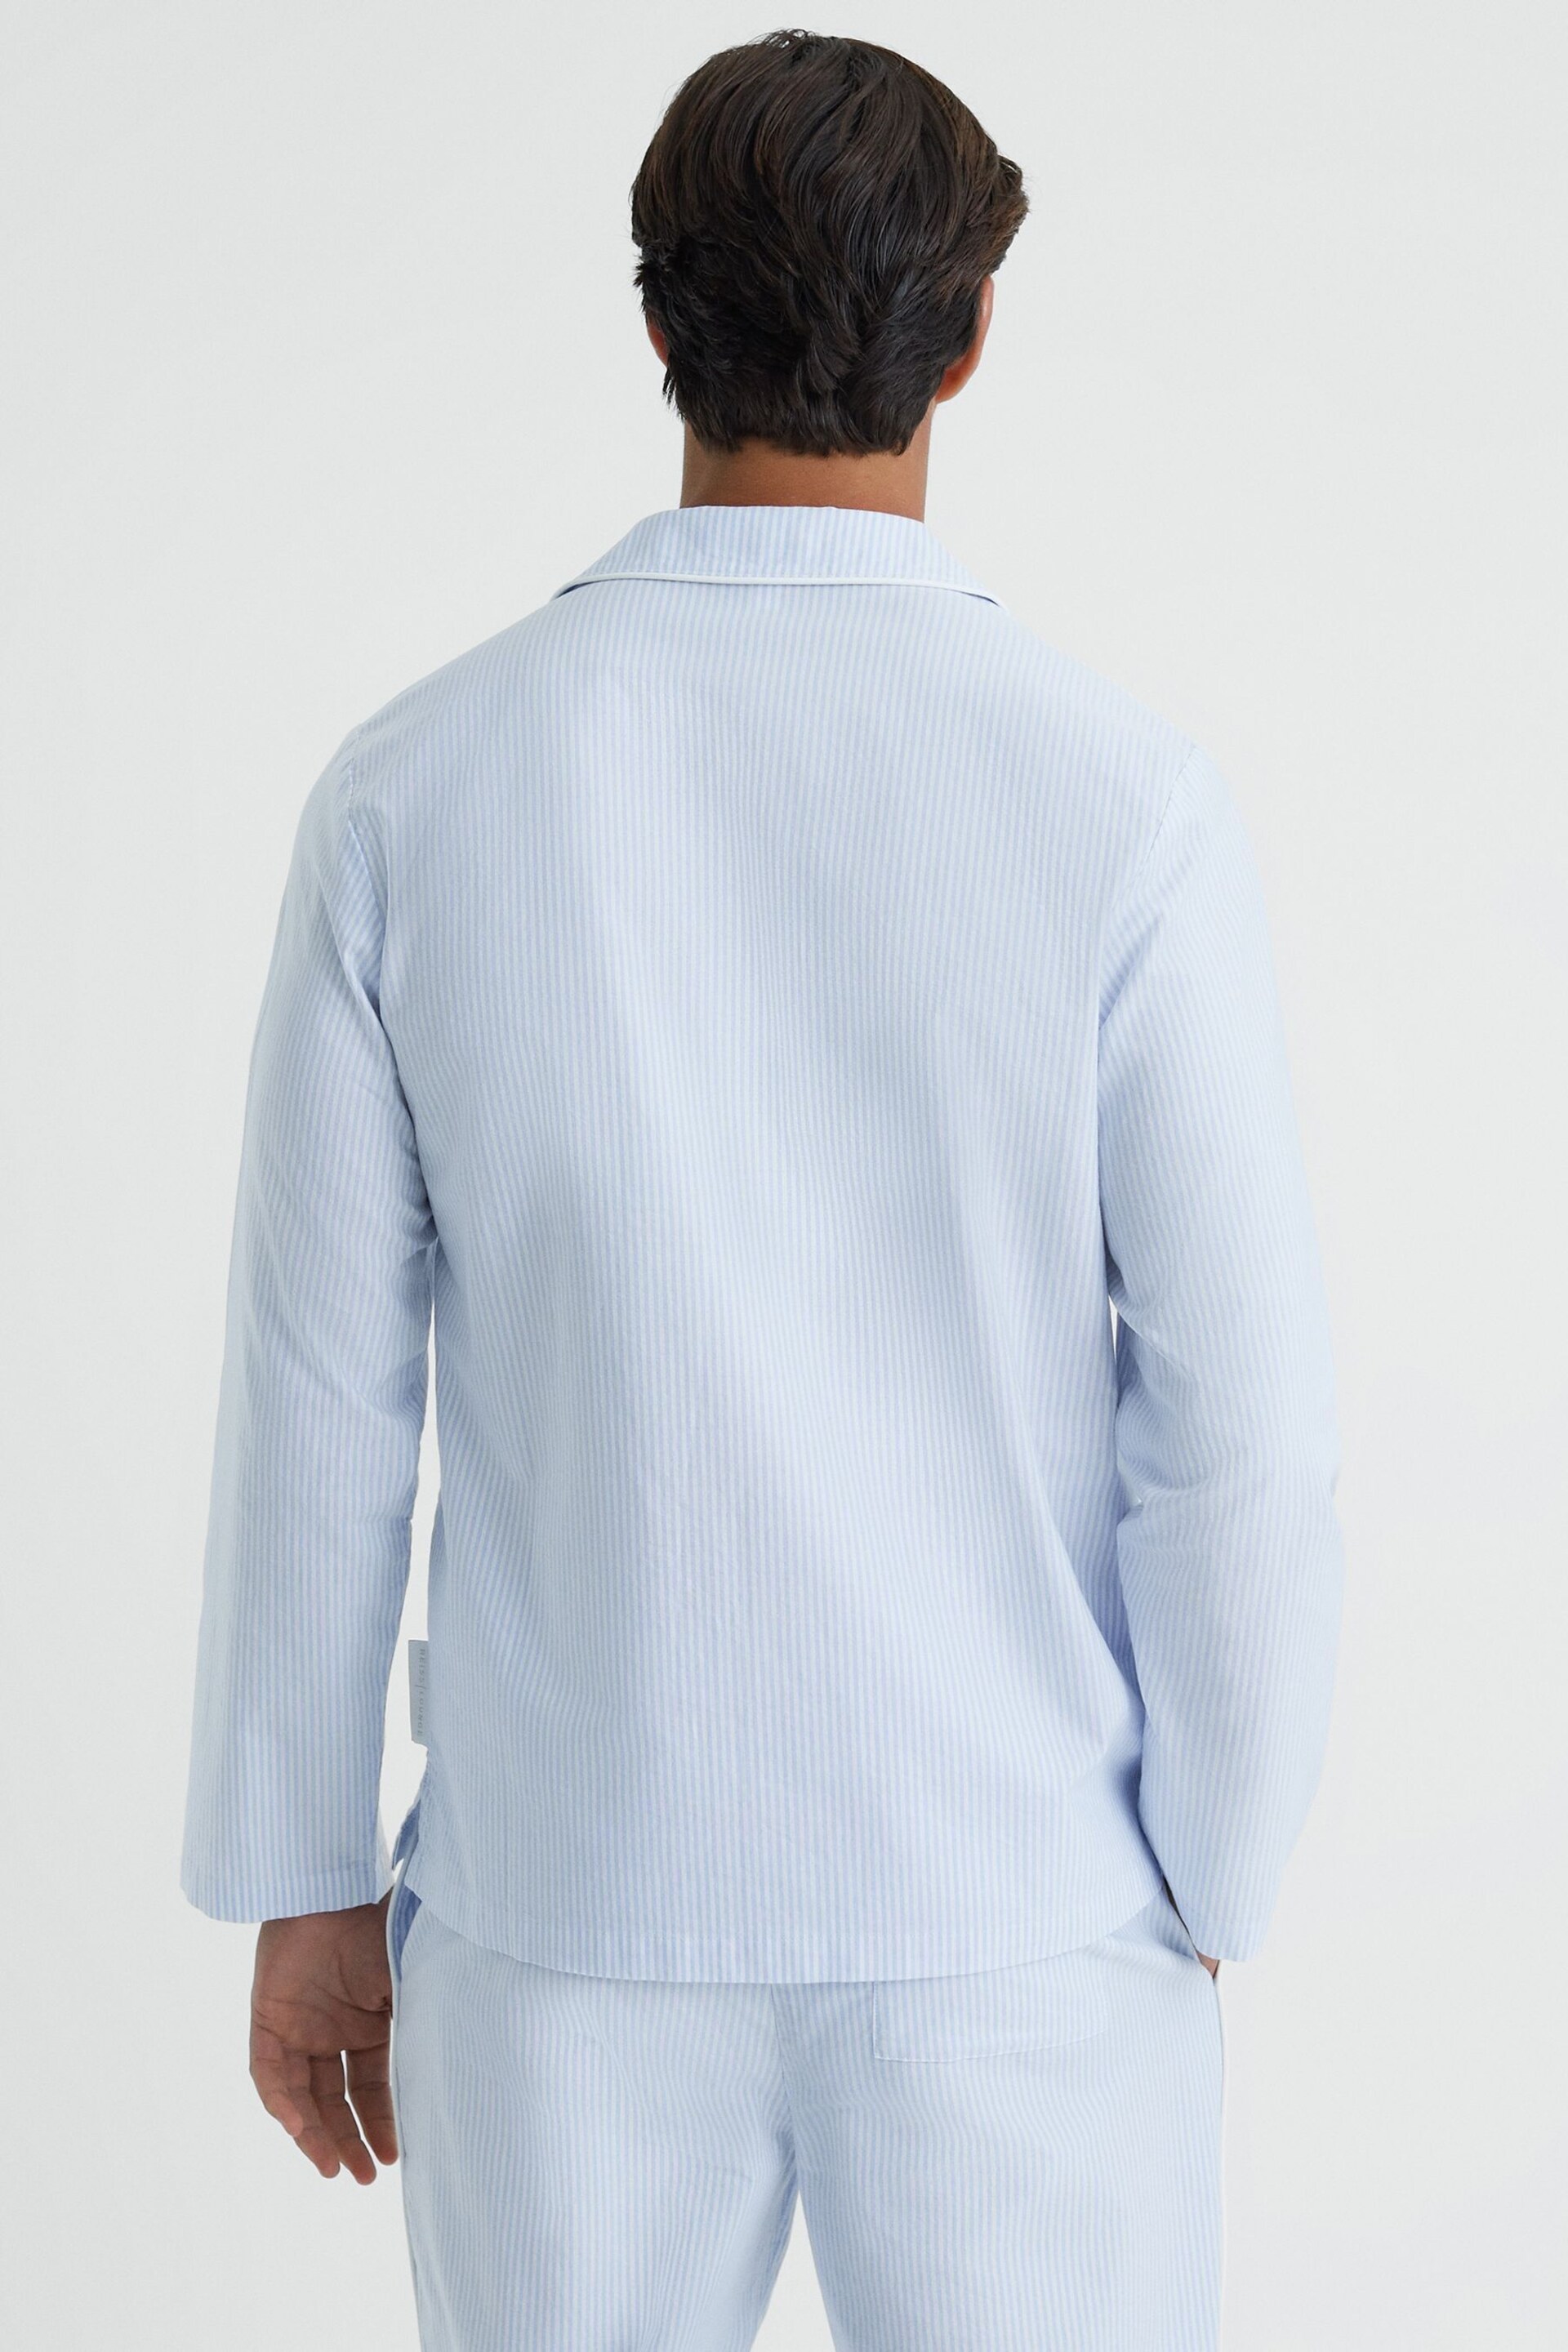 Reiss Blue/White Westley Striped Cotton Button-Through Pyjama Shirt - Image 5 of 5